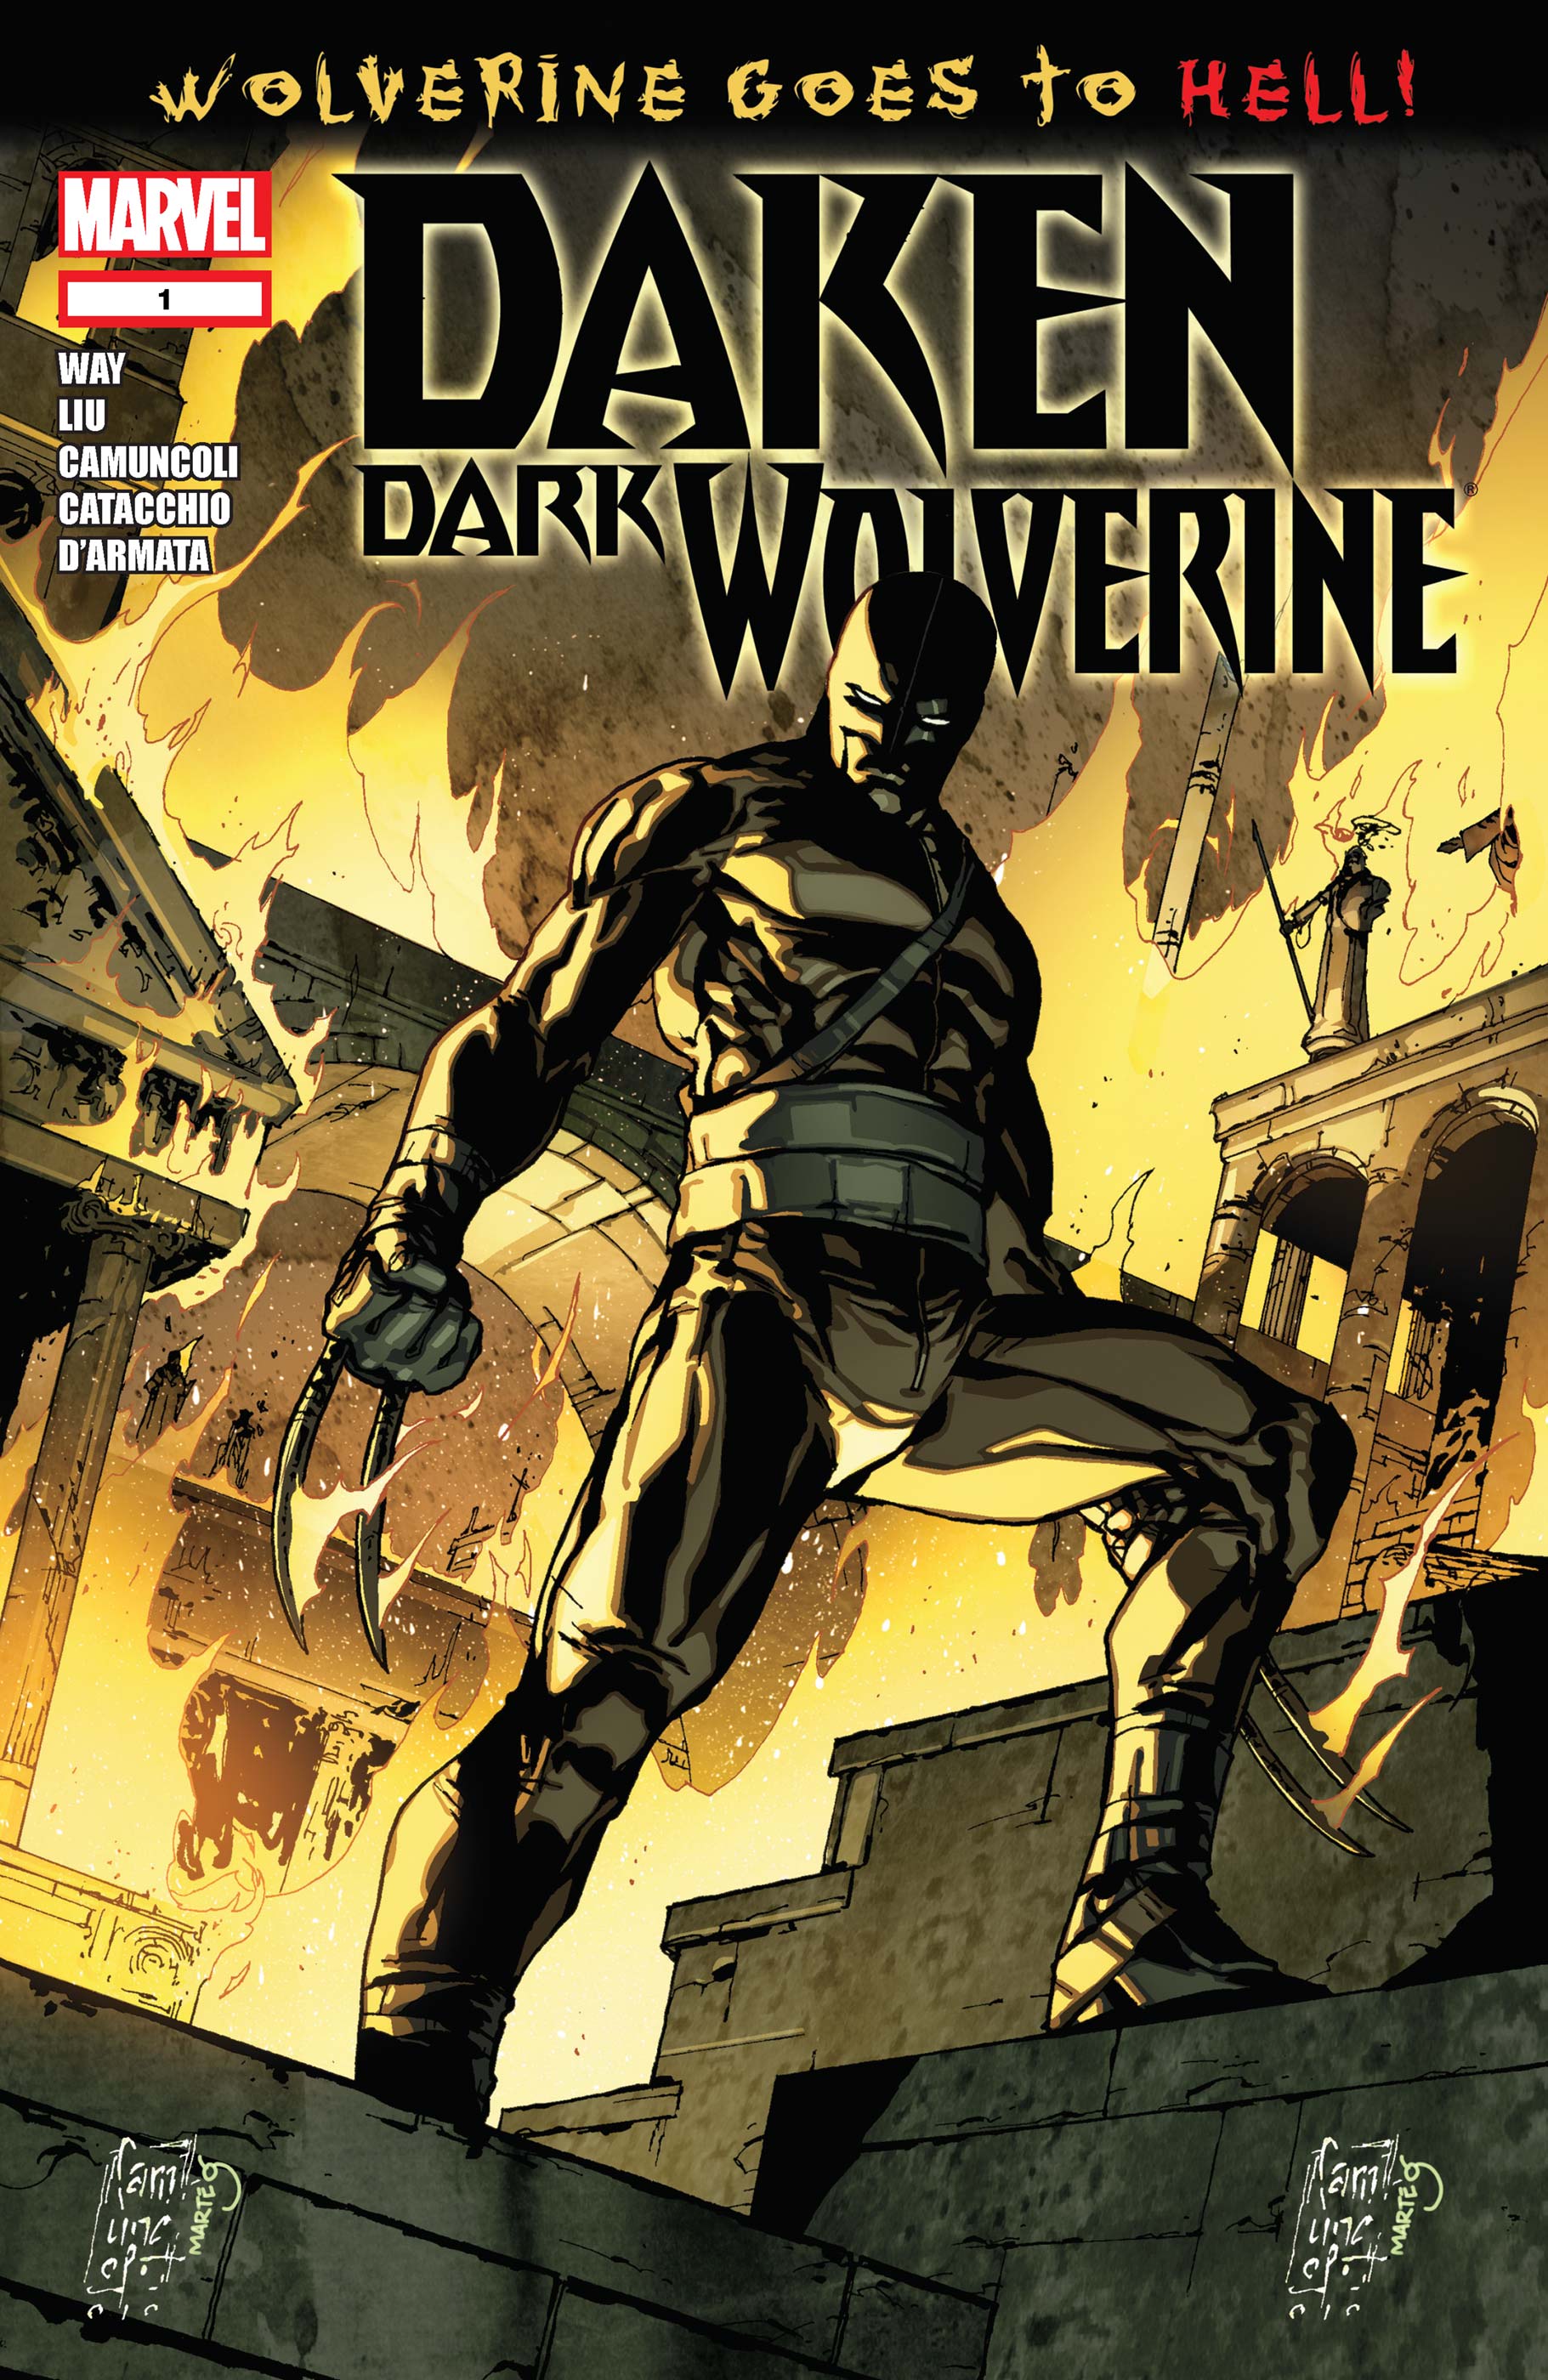 Daken: Dark Wolverine (2010) #1